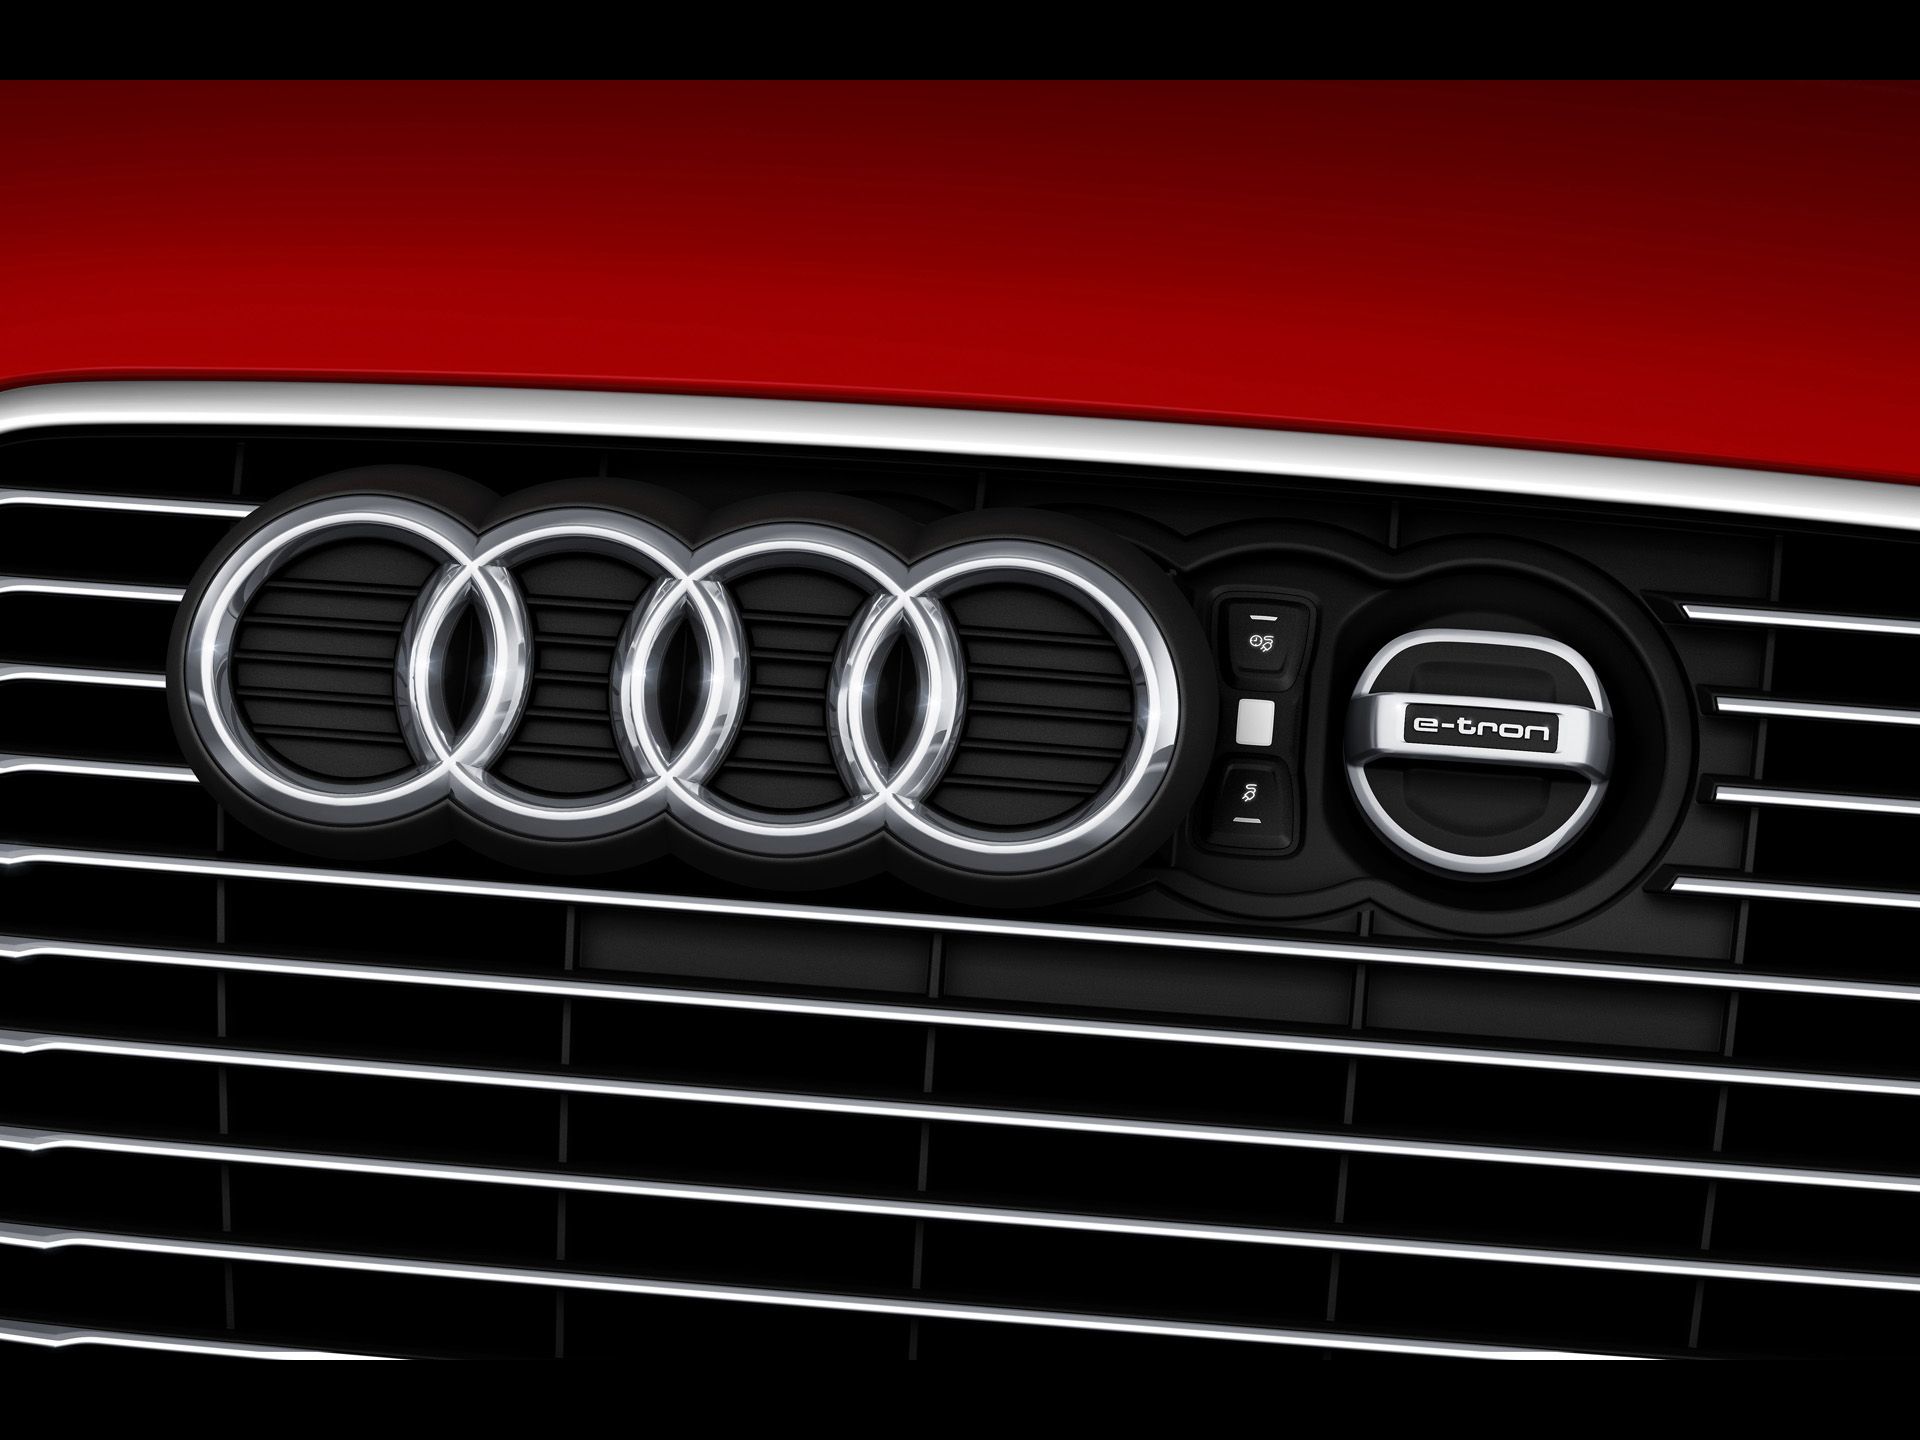 2013 Audi A3 e tron - Four Rings - 1920x1440 - Wallpaper